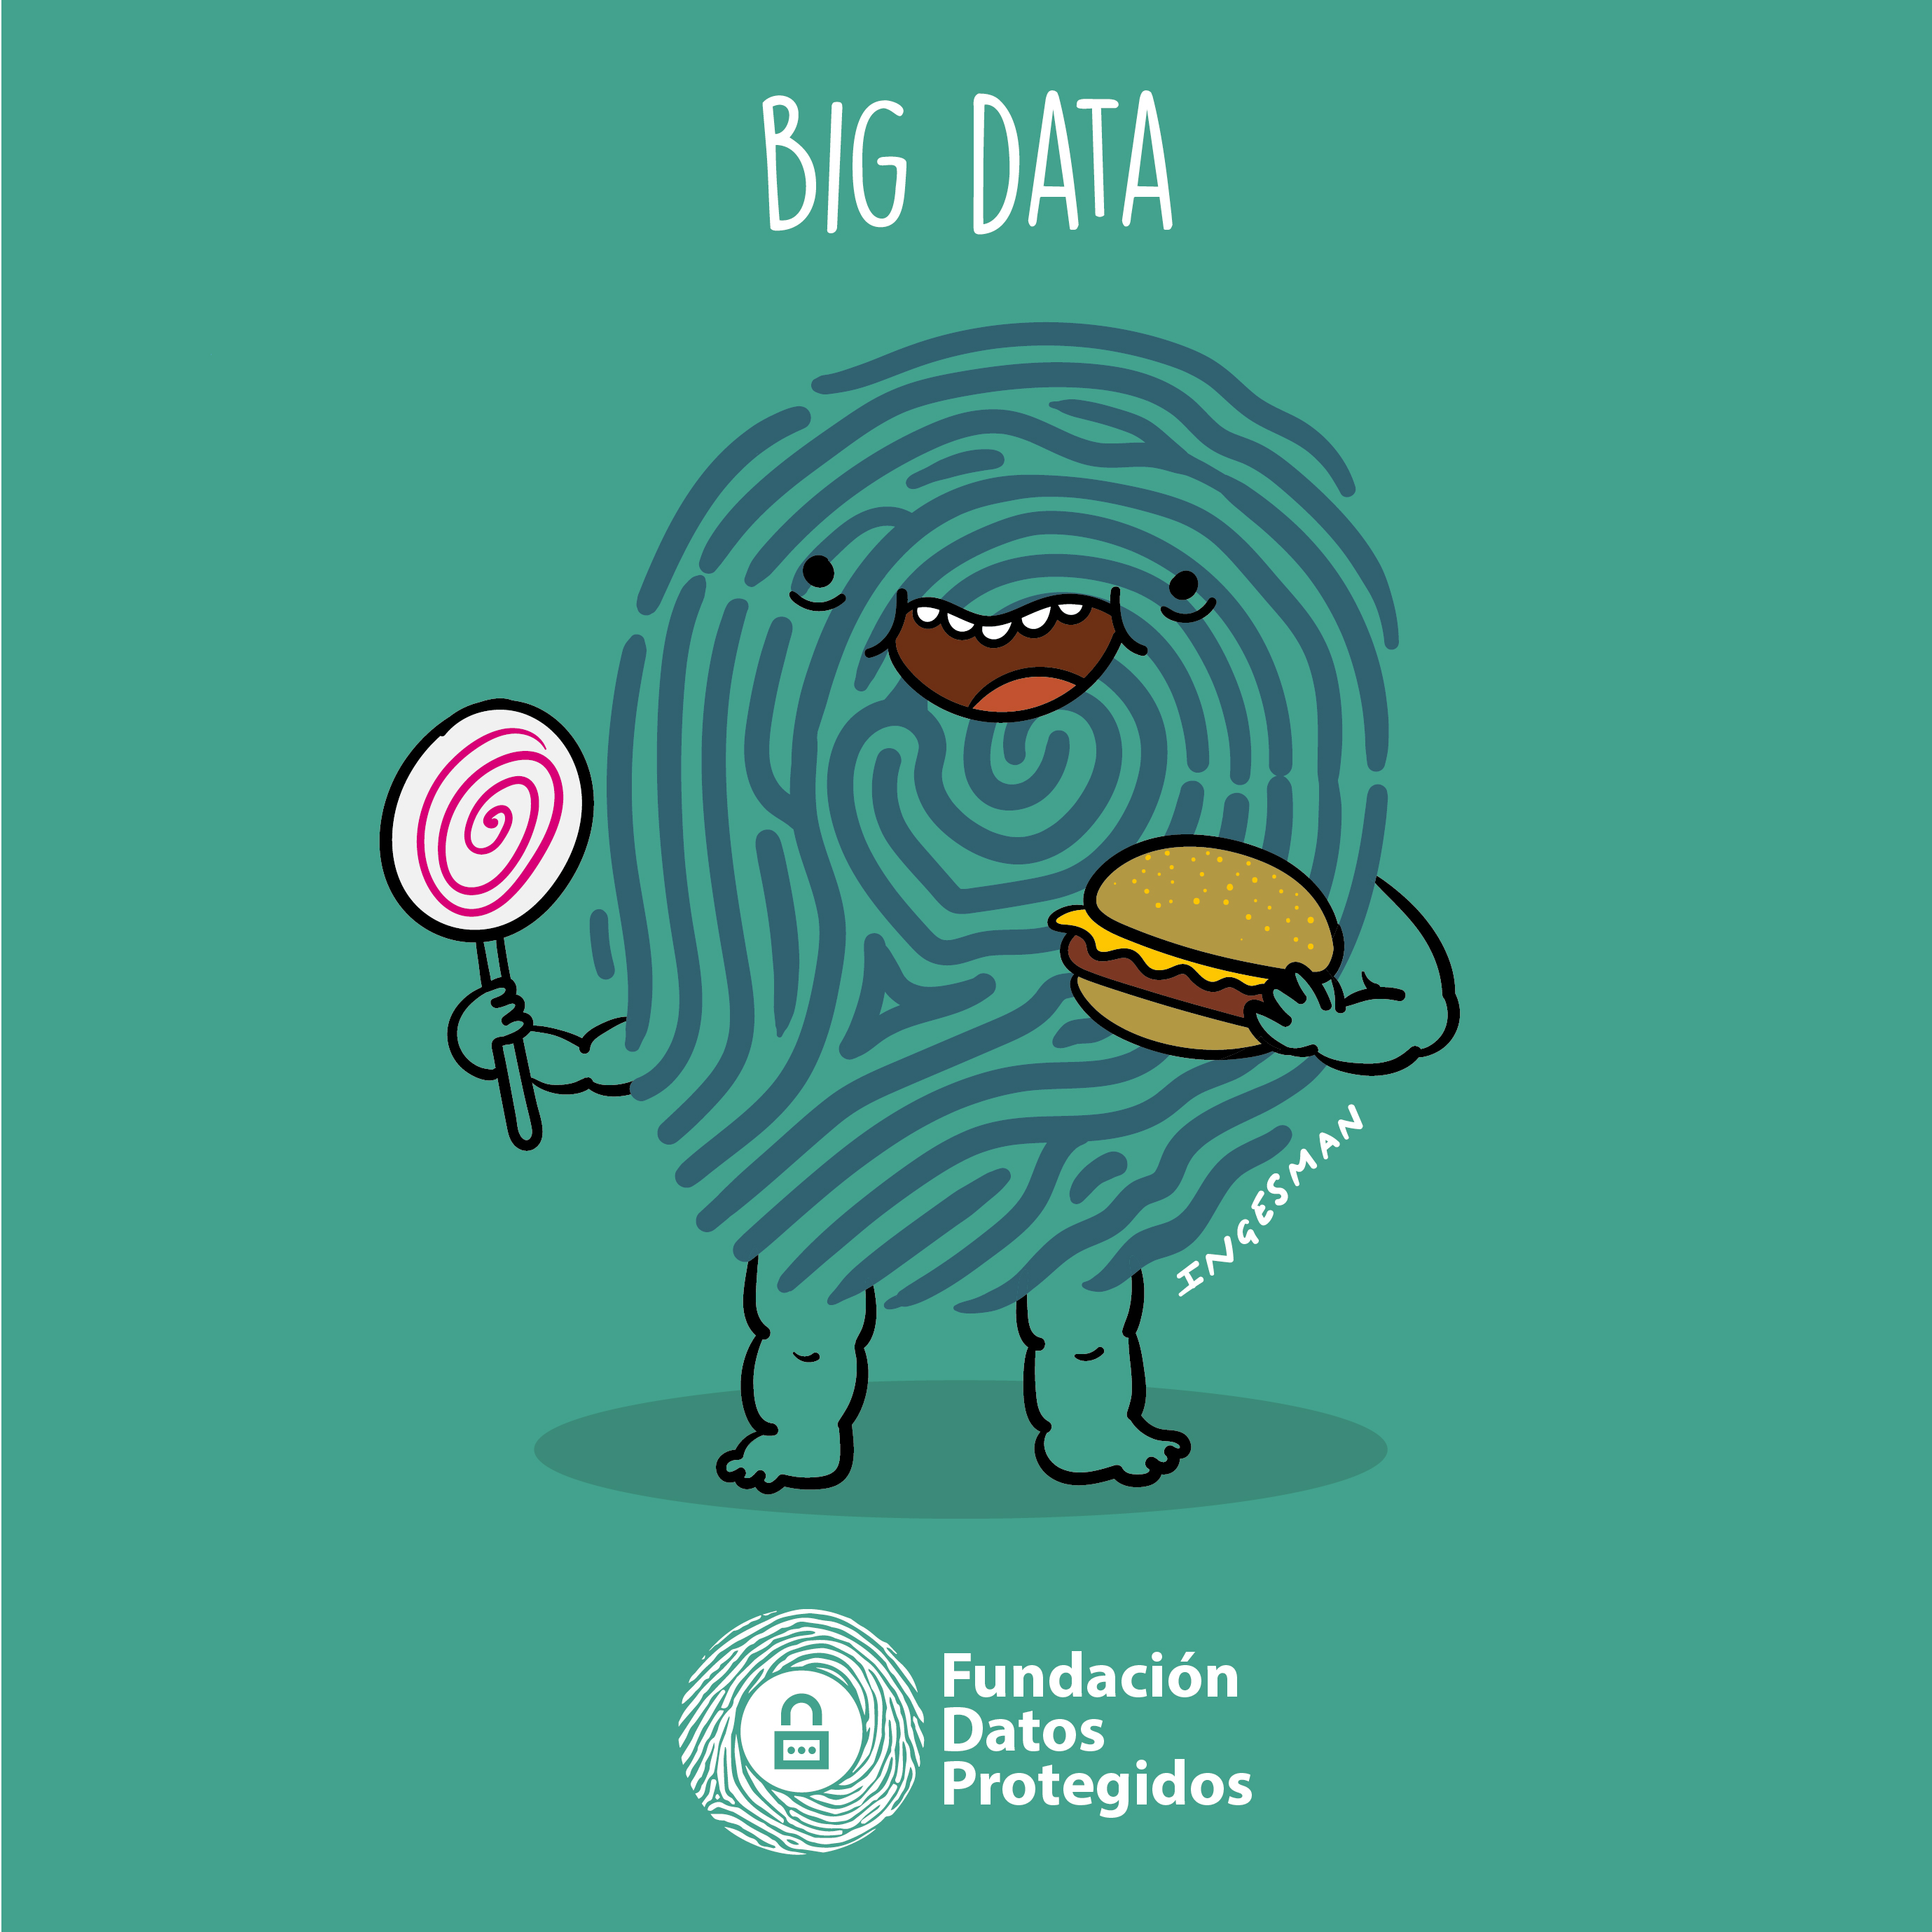 Datos Protegidos para el Big Data